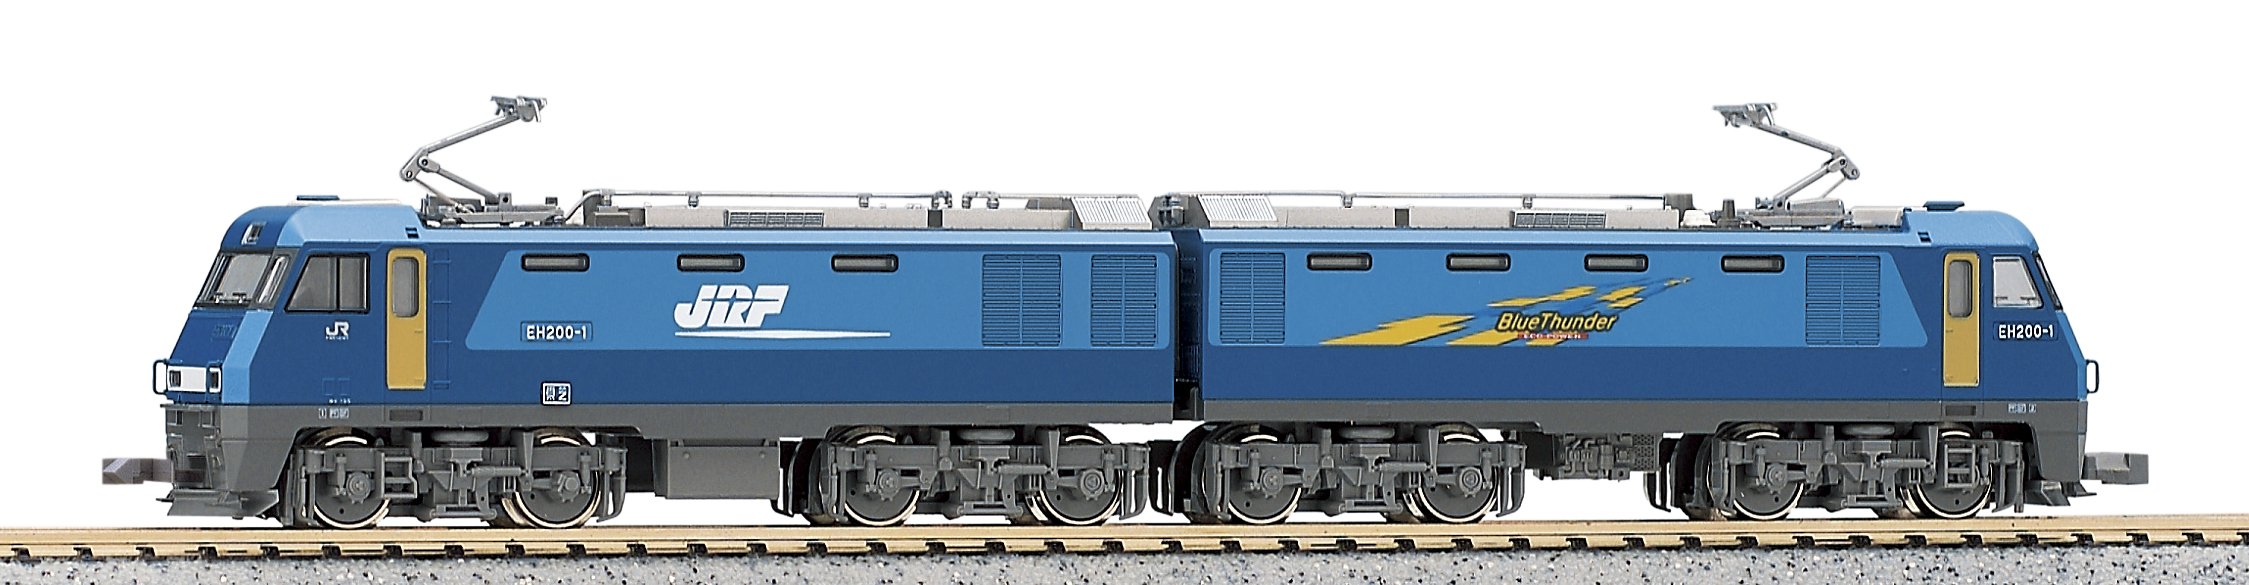 Locomotive électrique Kato N Gauge 3045 - Modèle ferroviaire Eh200